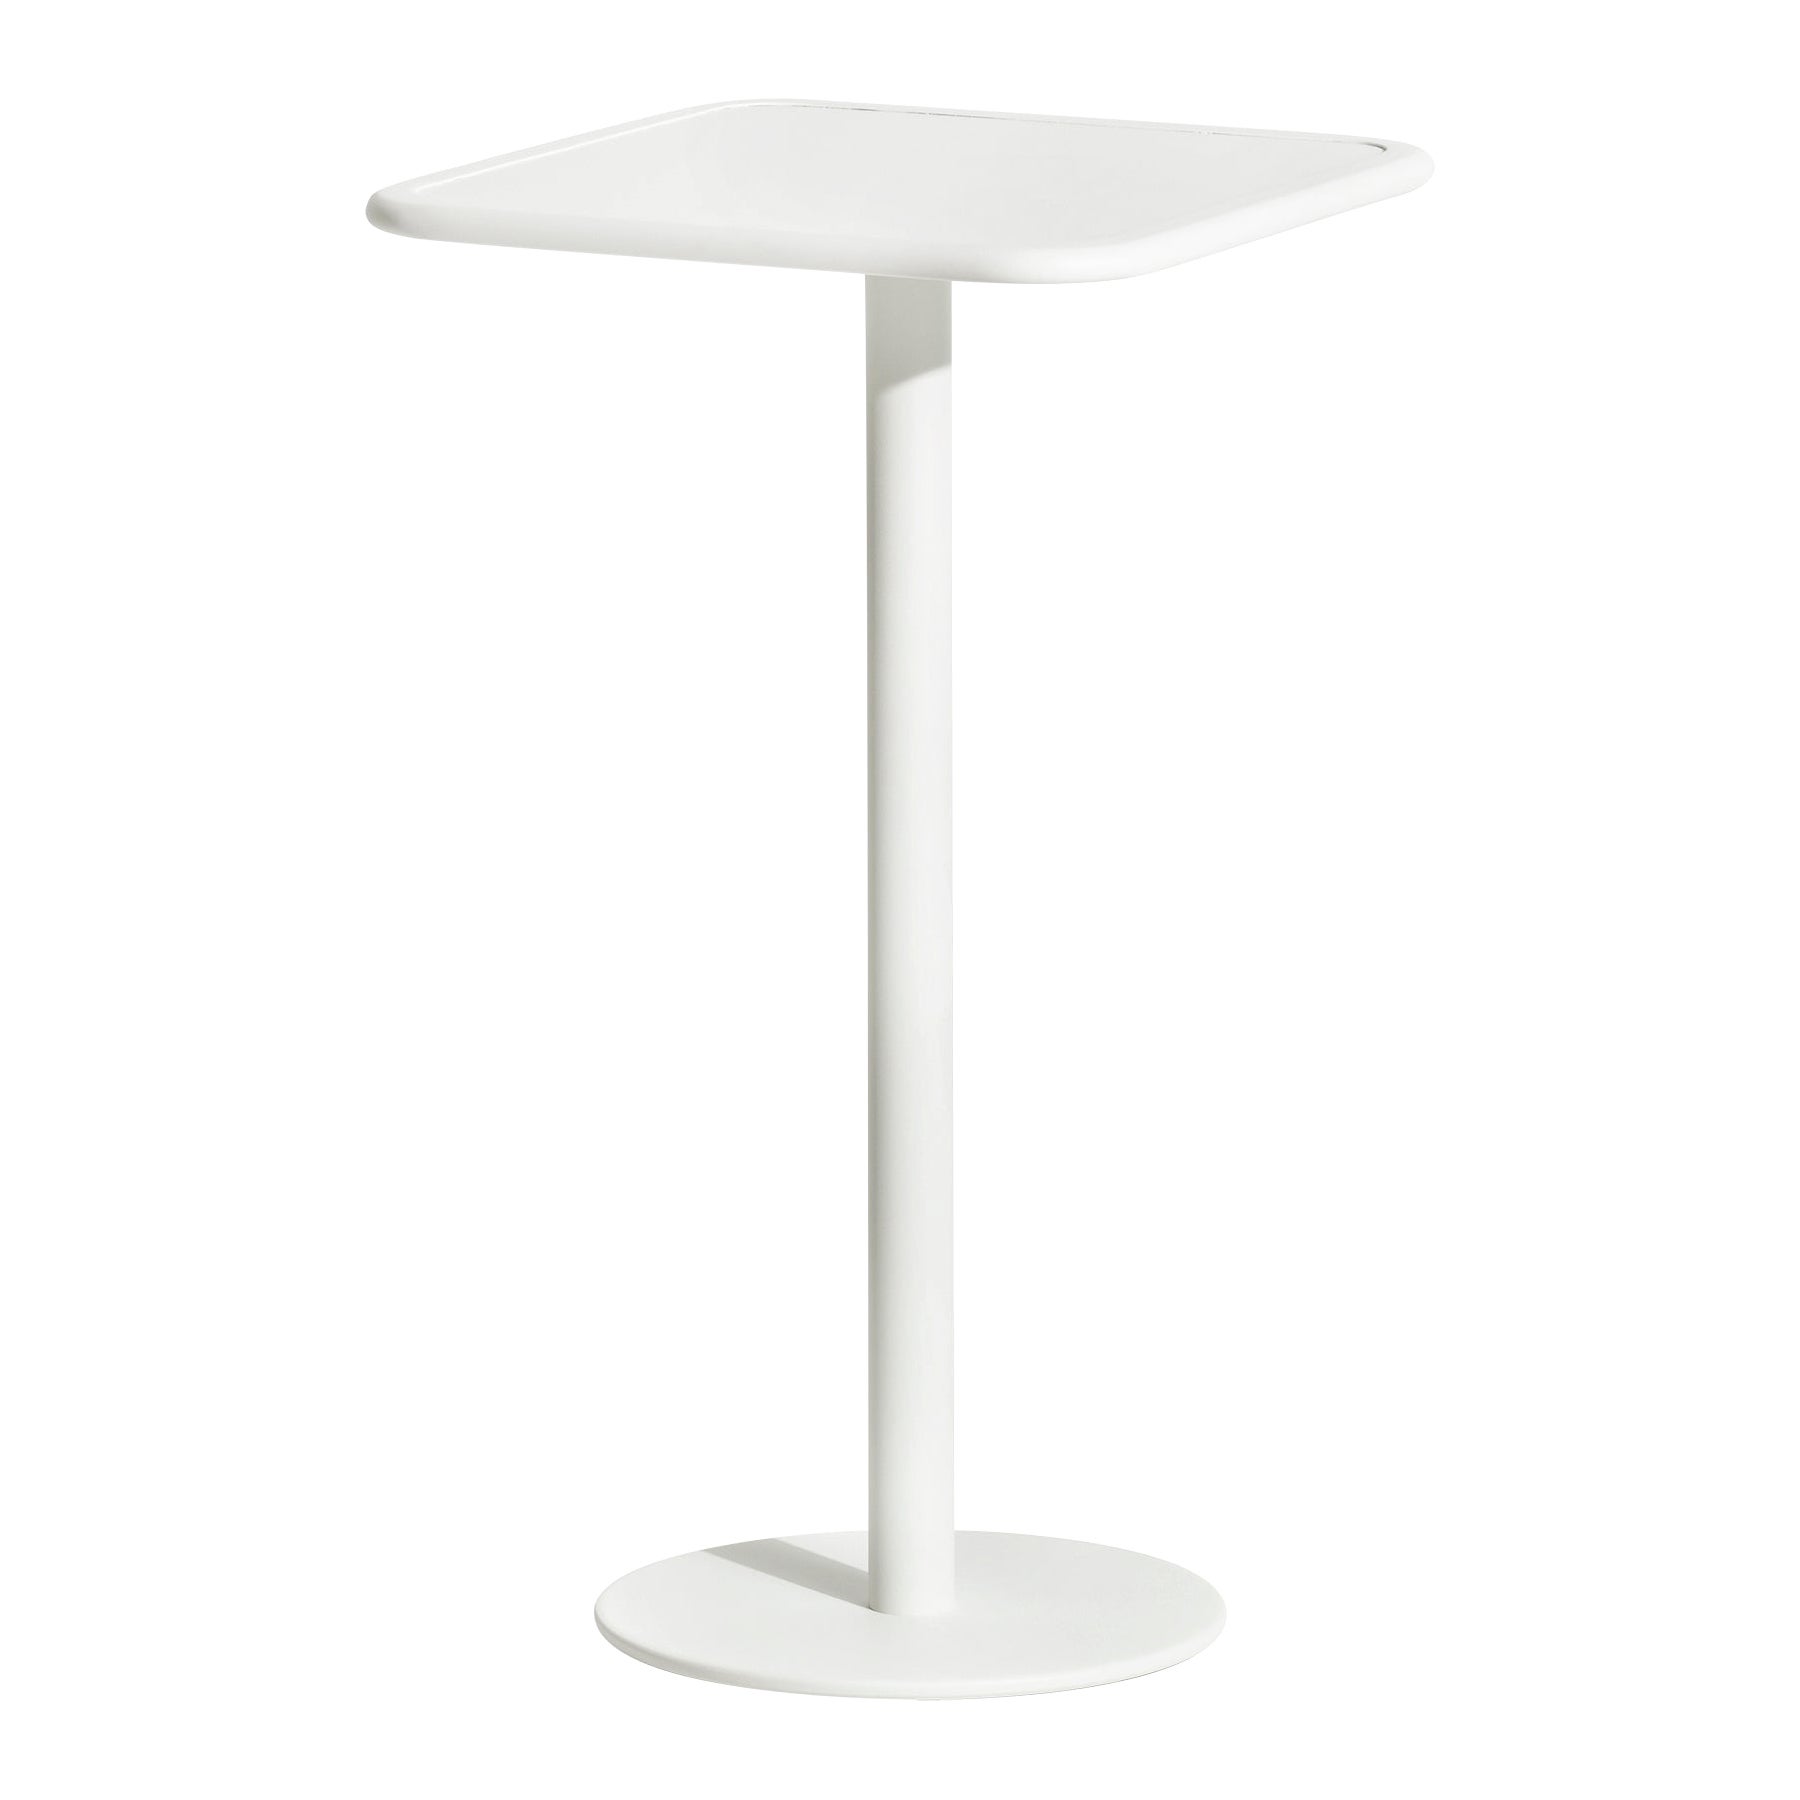 Petite table haute carrée Week-end en aluminium blanc de Friture, 2017